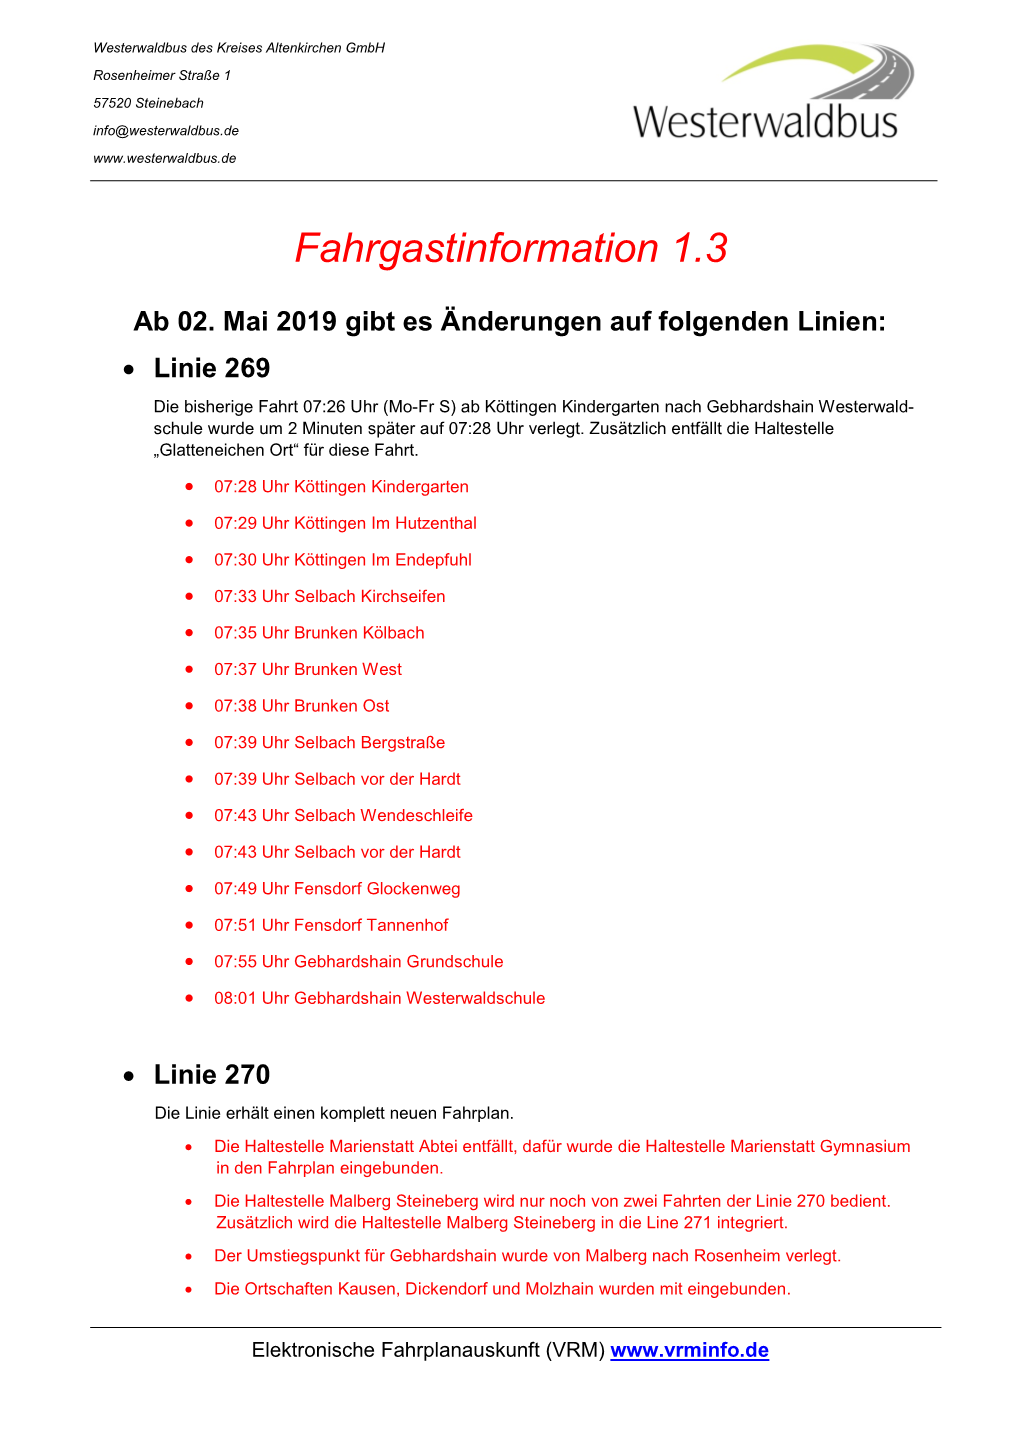 Fahrgastinformation 1.3